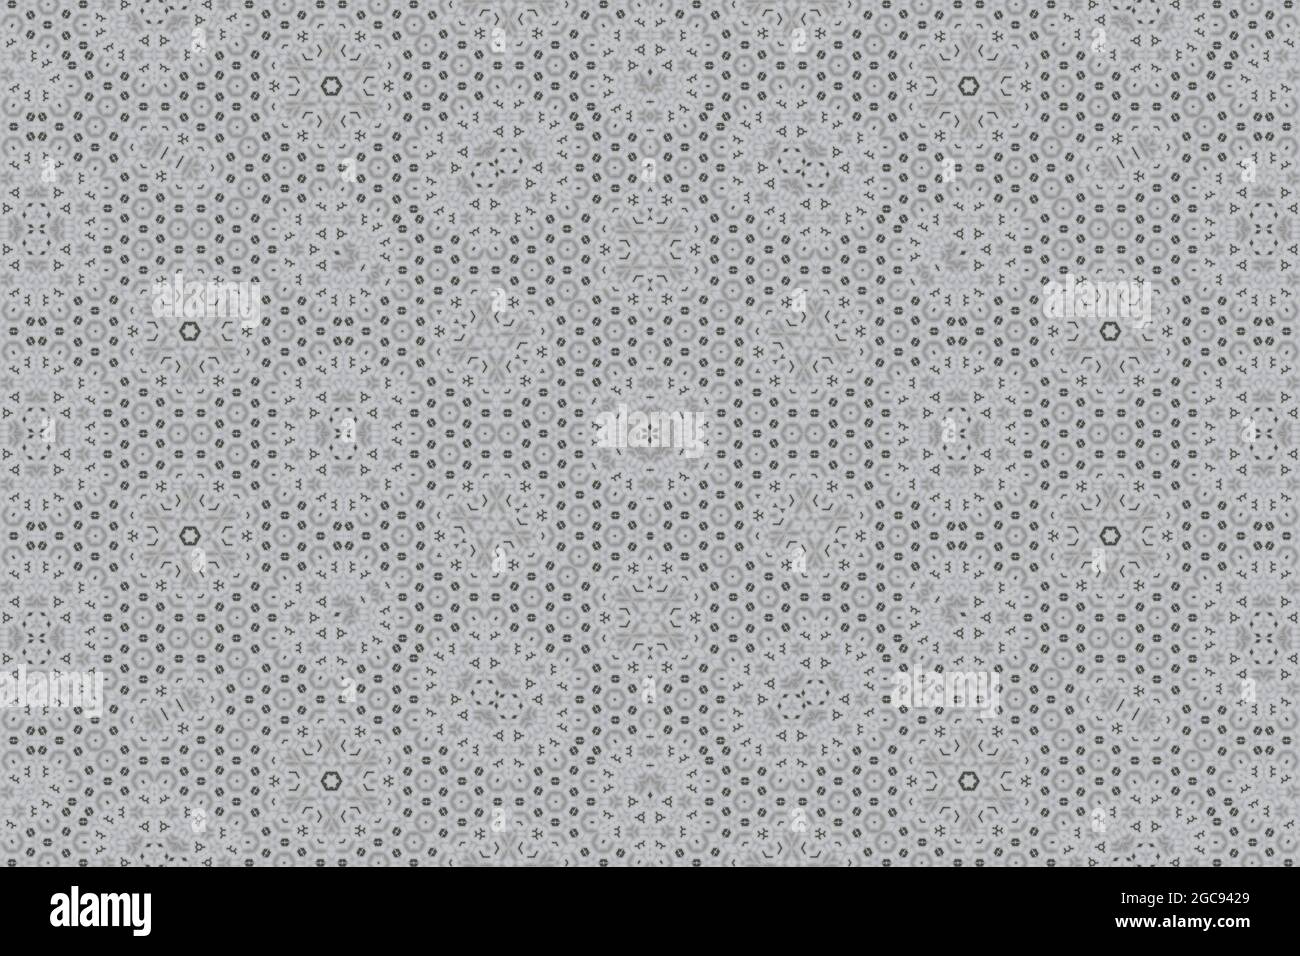 Patrón de caleidoscopio blanco marfil. Estrella geométrica compleja y mandala hexagonal. Motivos y patrones islámicos de estilo árabe para el papel pintado y el arte de las baldosas Foto de stock